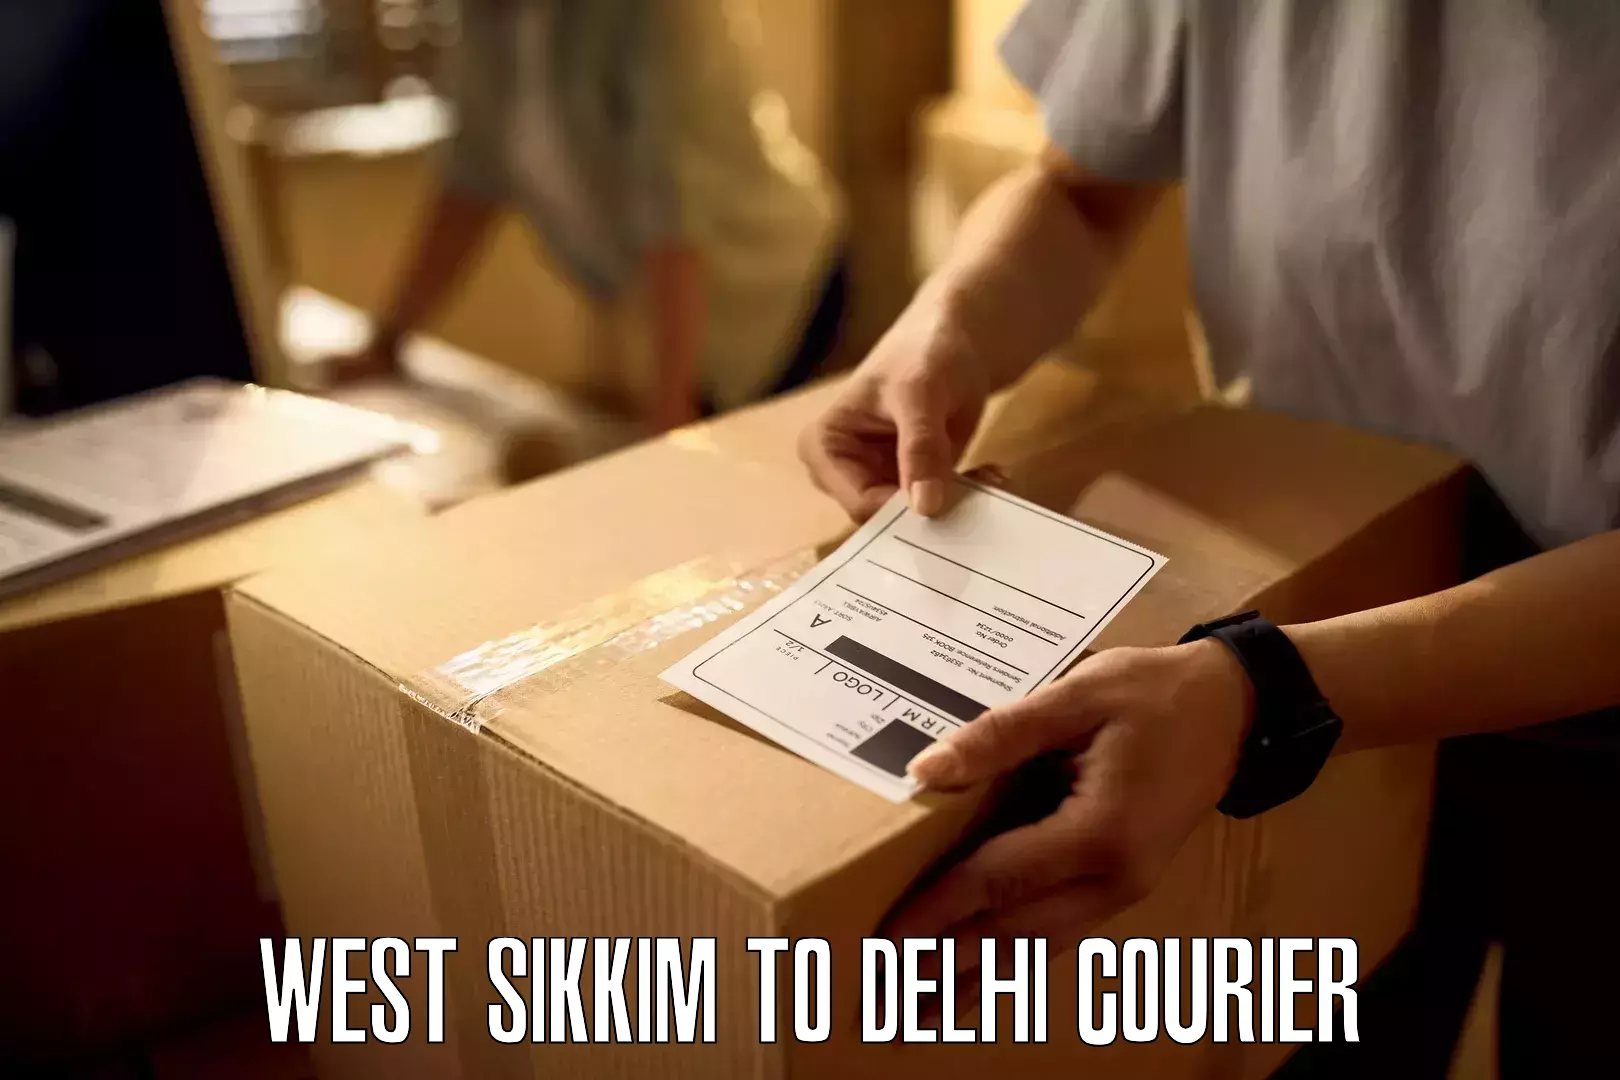 Personal courier services West Sikkim to Jamia Millia Islamia New Delhi